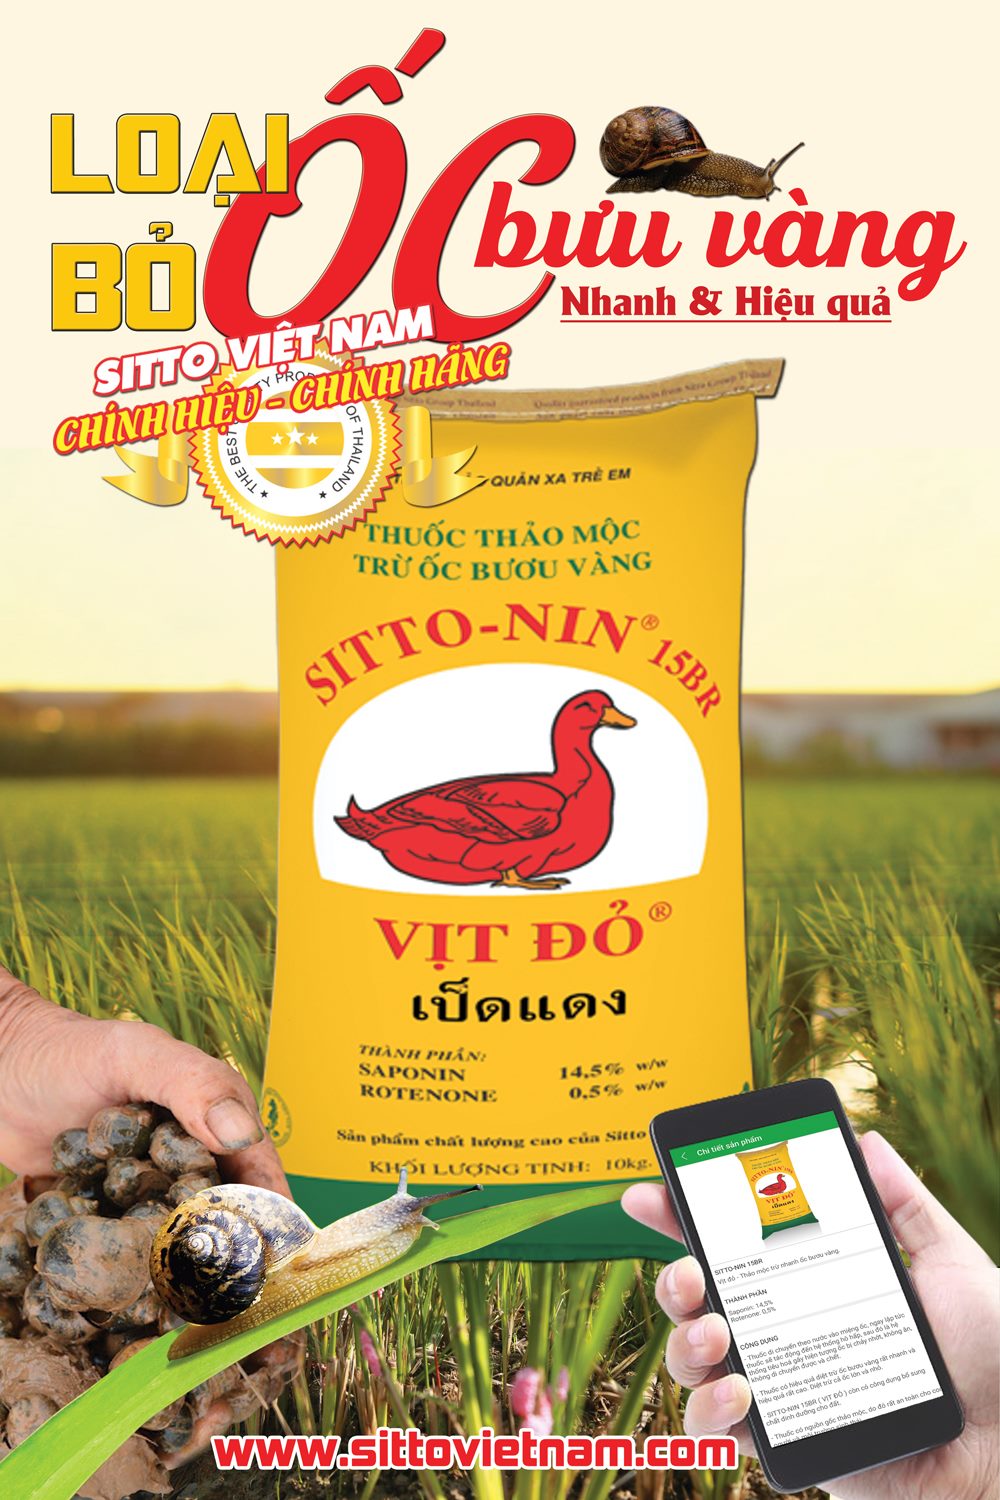 Sitto-Nin 15BR (Gói 10kg) - Thảo mộc trừ ốc cho cây lúa